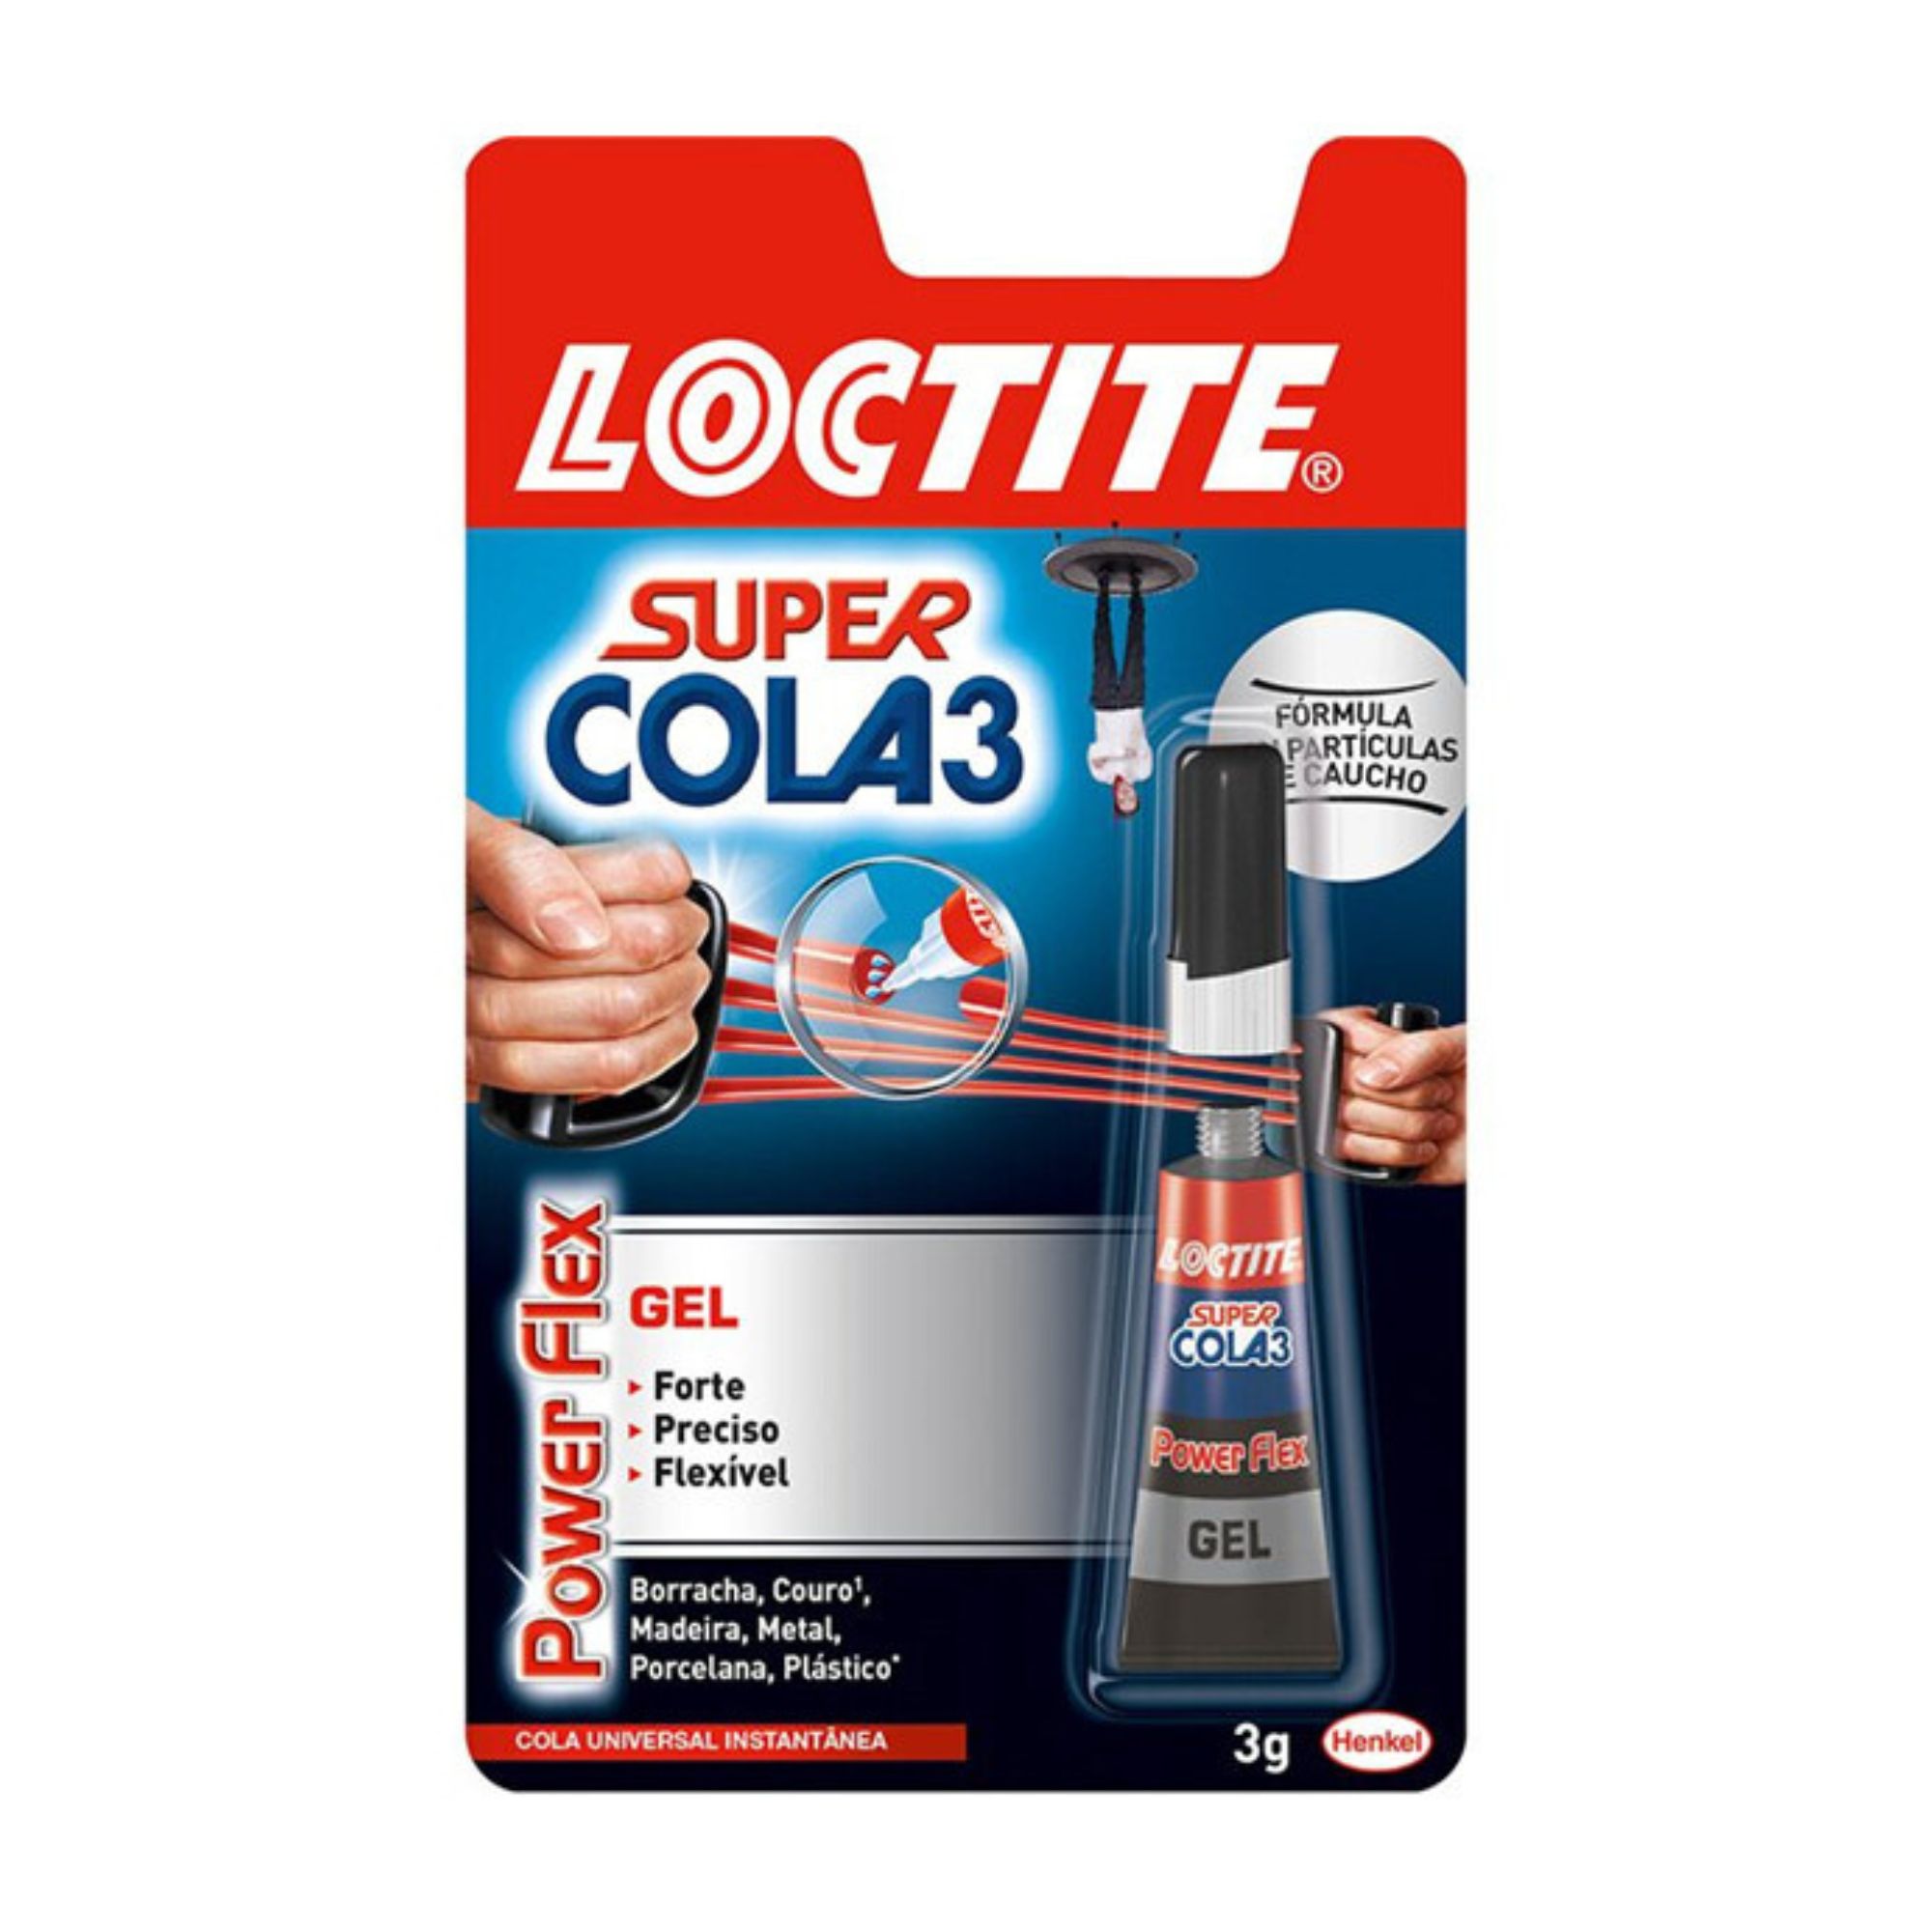 LOCTITE SUPER COLA 3 - 3g POWERFLEX BLISTER